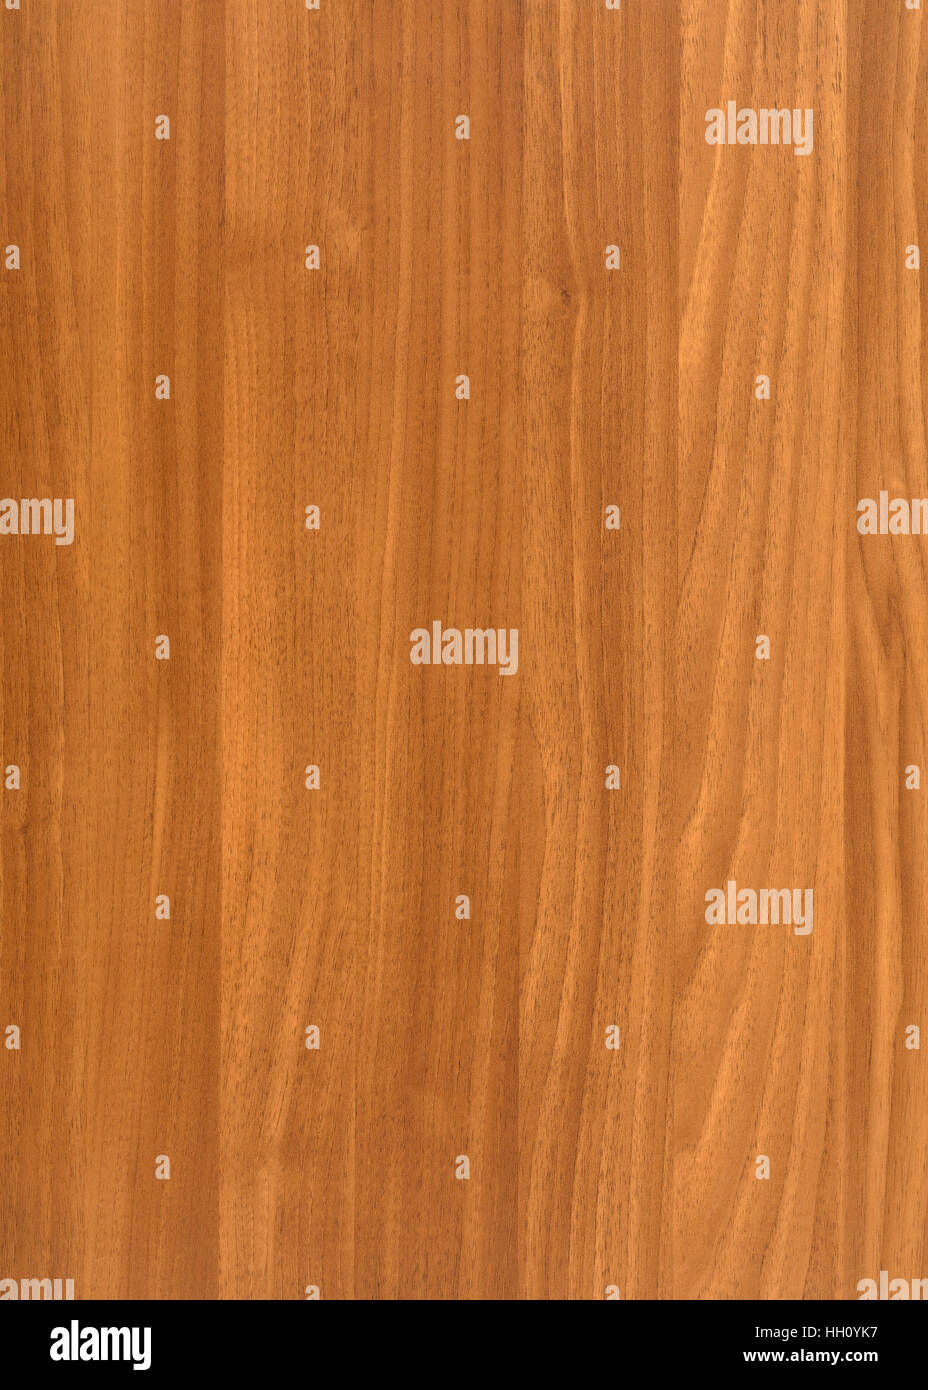 Une image complète de la surface du grain de bois brun Banque D'Images